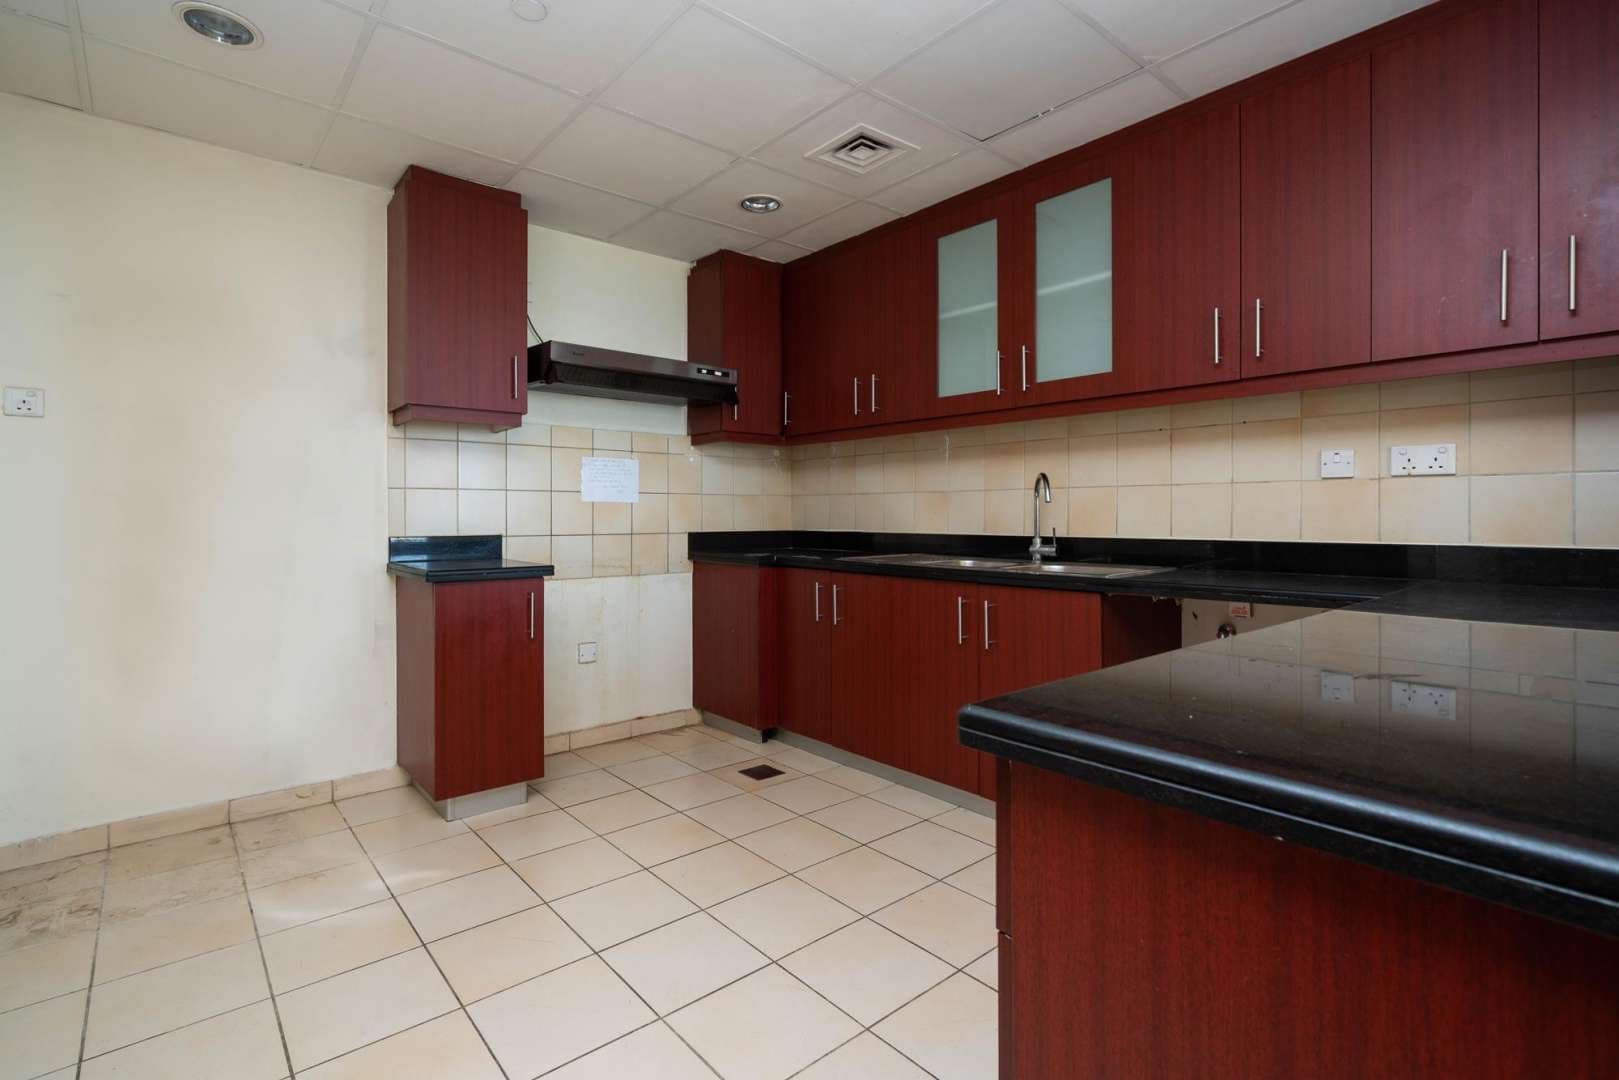 2 Bedroom Apartment For Rent Amwaj 4 Lp05038 27cebb9a47c4a600.jpeg